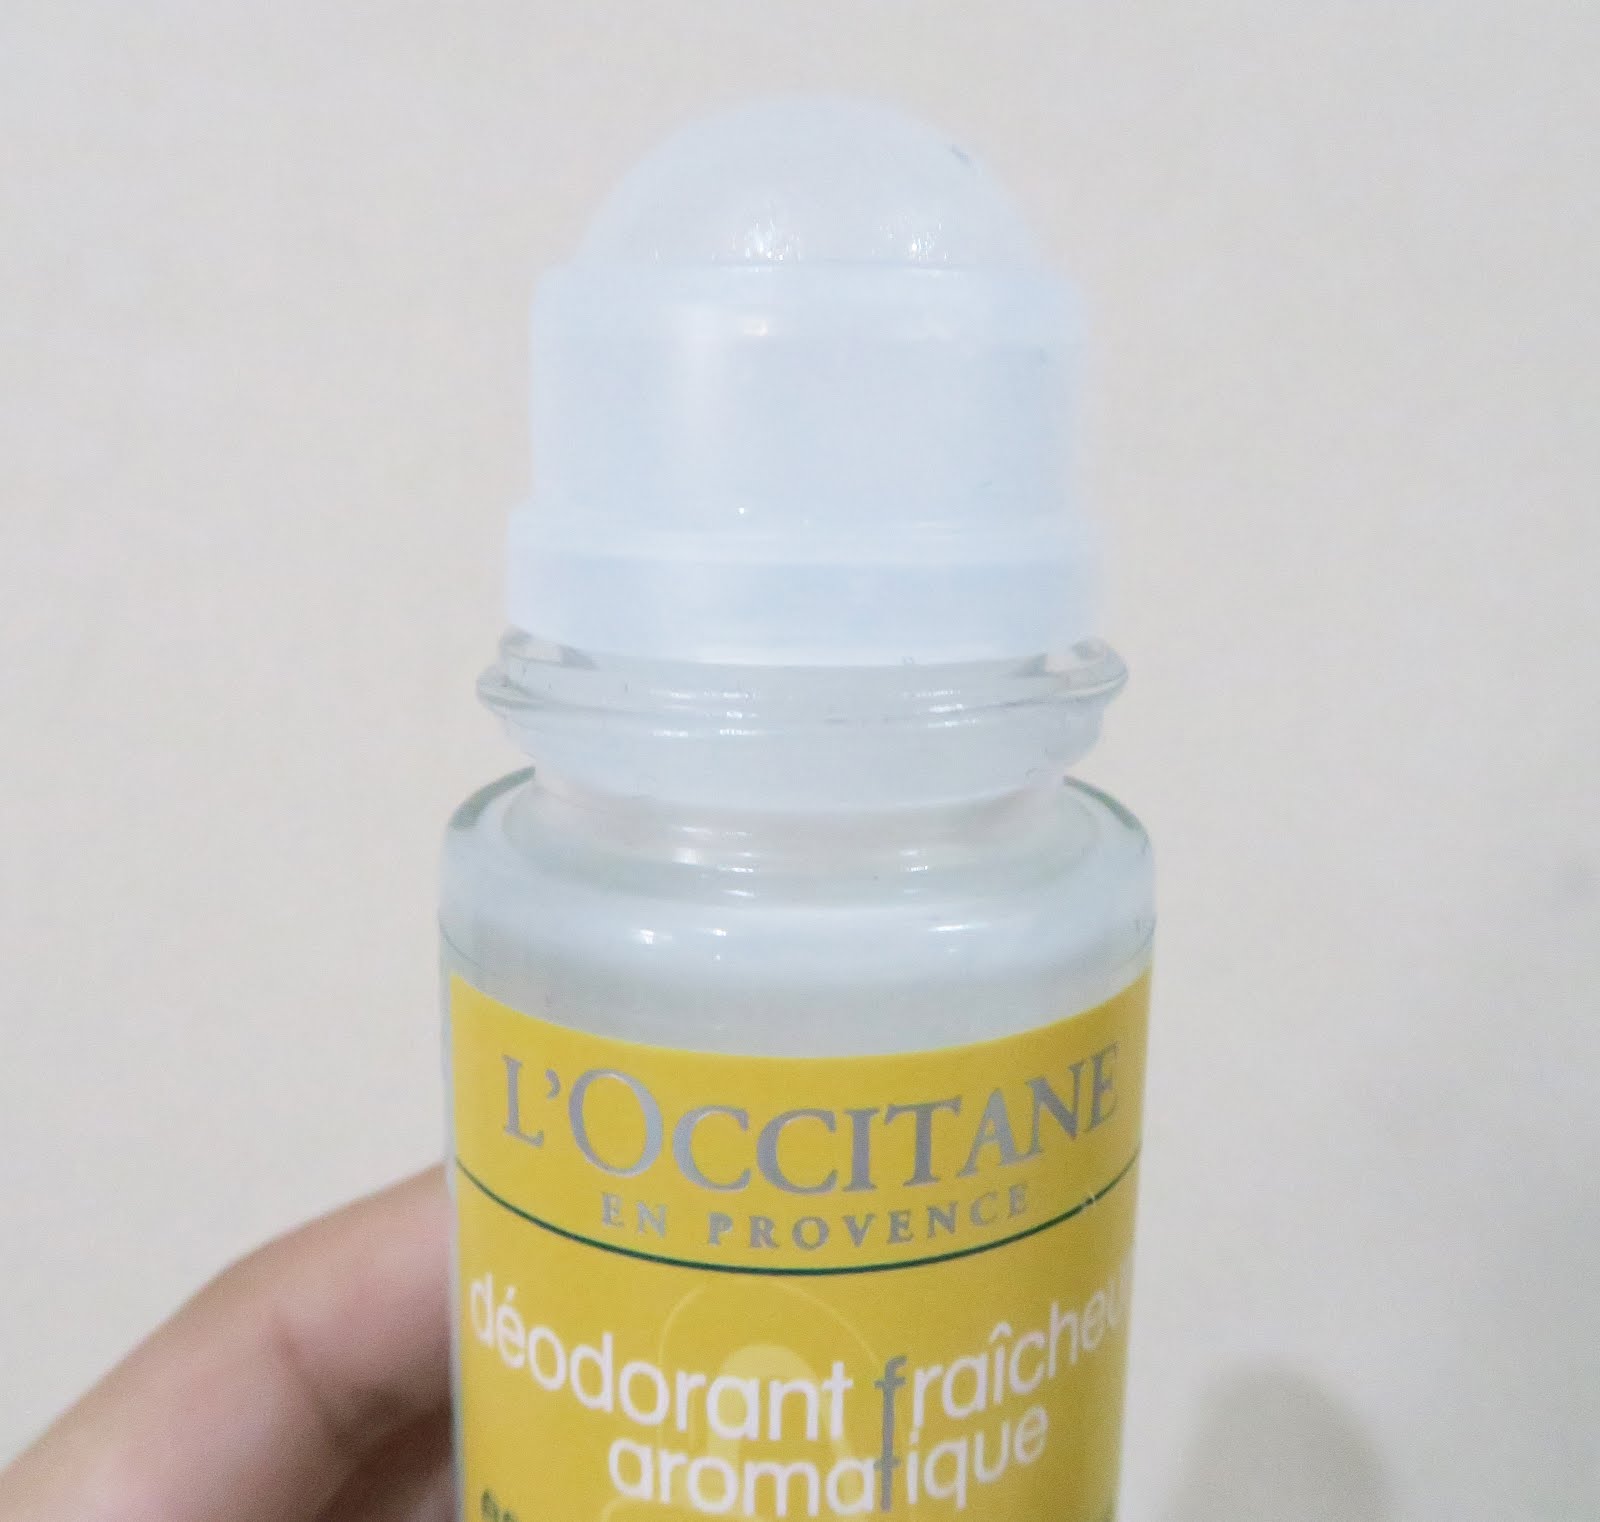 à¸à¸¥à¸à¸²à¸£à¸à¹à¸à¸«à¸²à¸£à¸¹à¸à¸�à¸²à¸à¸ªà¸³à¸«à¸£à¸±à¸ L'Occitane Aromachologie Refreshing Aromatic Deodorant